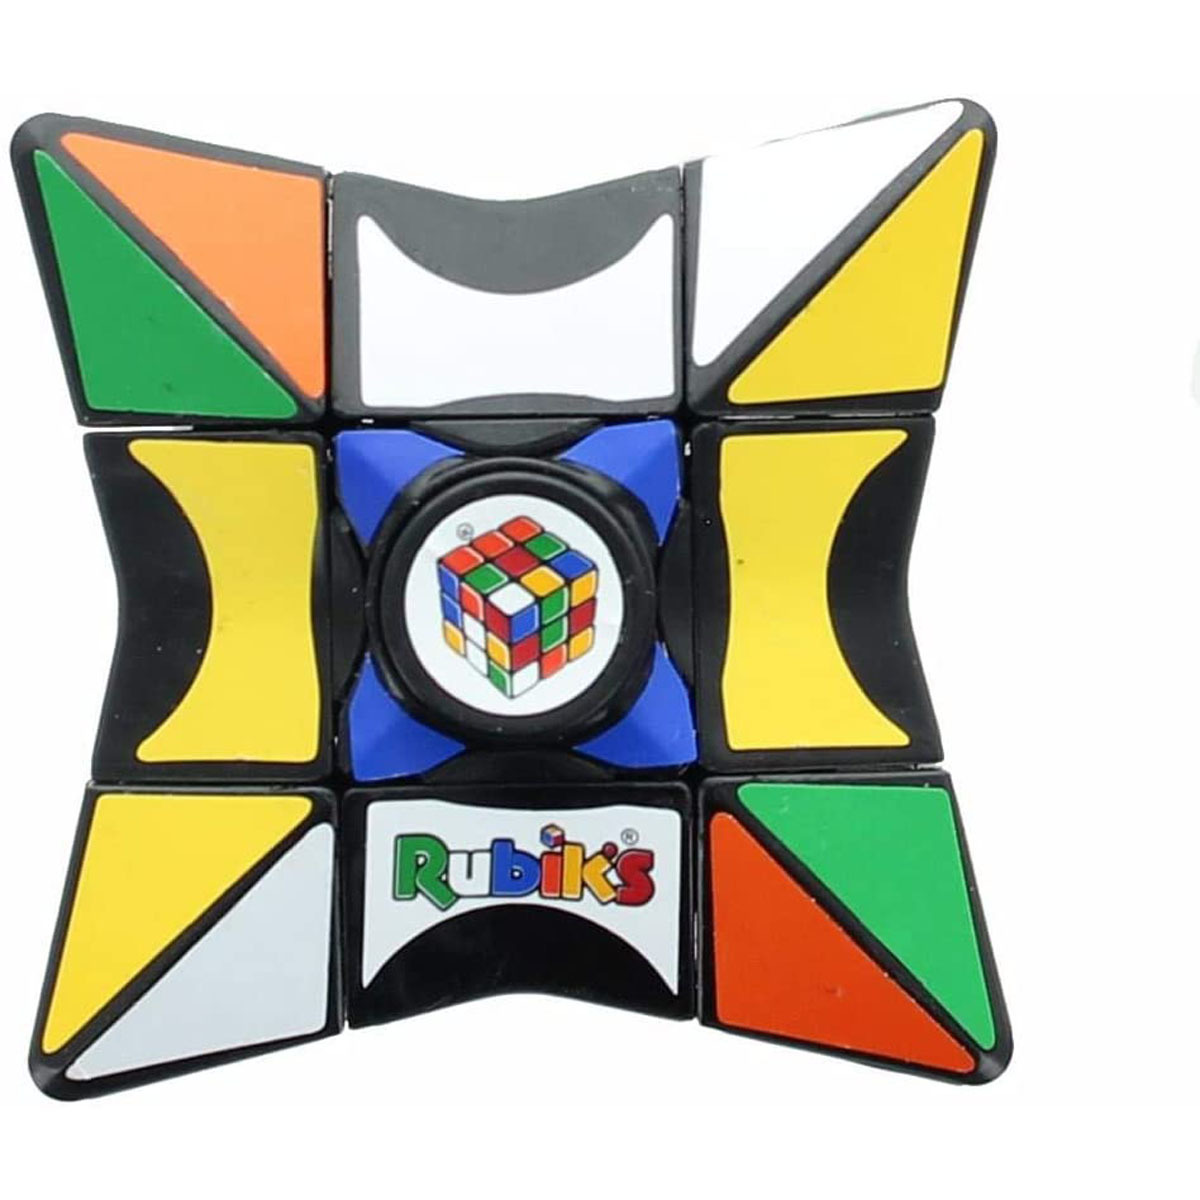 Rubik's Cube Magic Fidget Spinner Styles Vary) The Entertainer